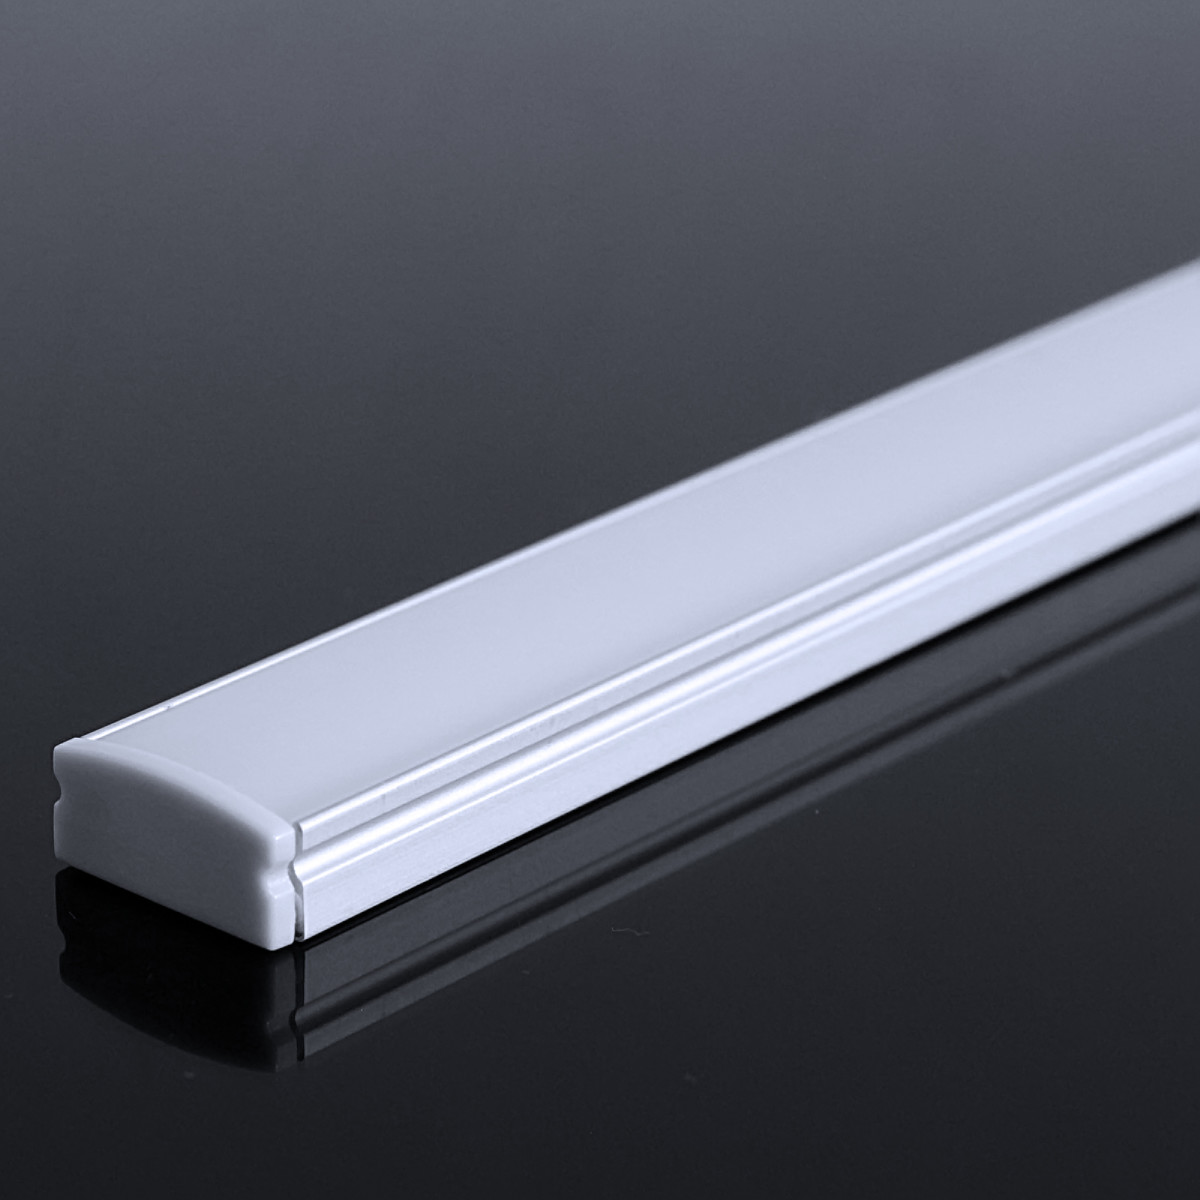 LED Flachprofil "Slim-Line" | Abdeckung diffus | Zuschnitt auf 169cm |